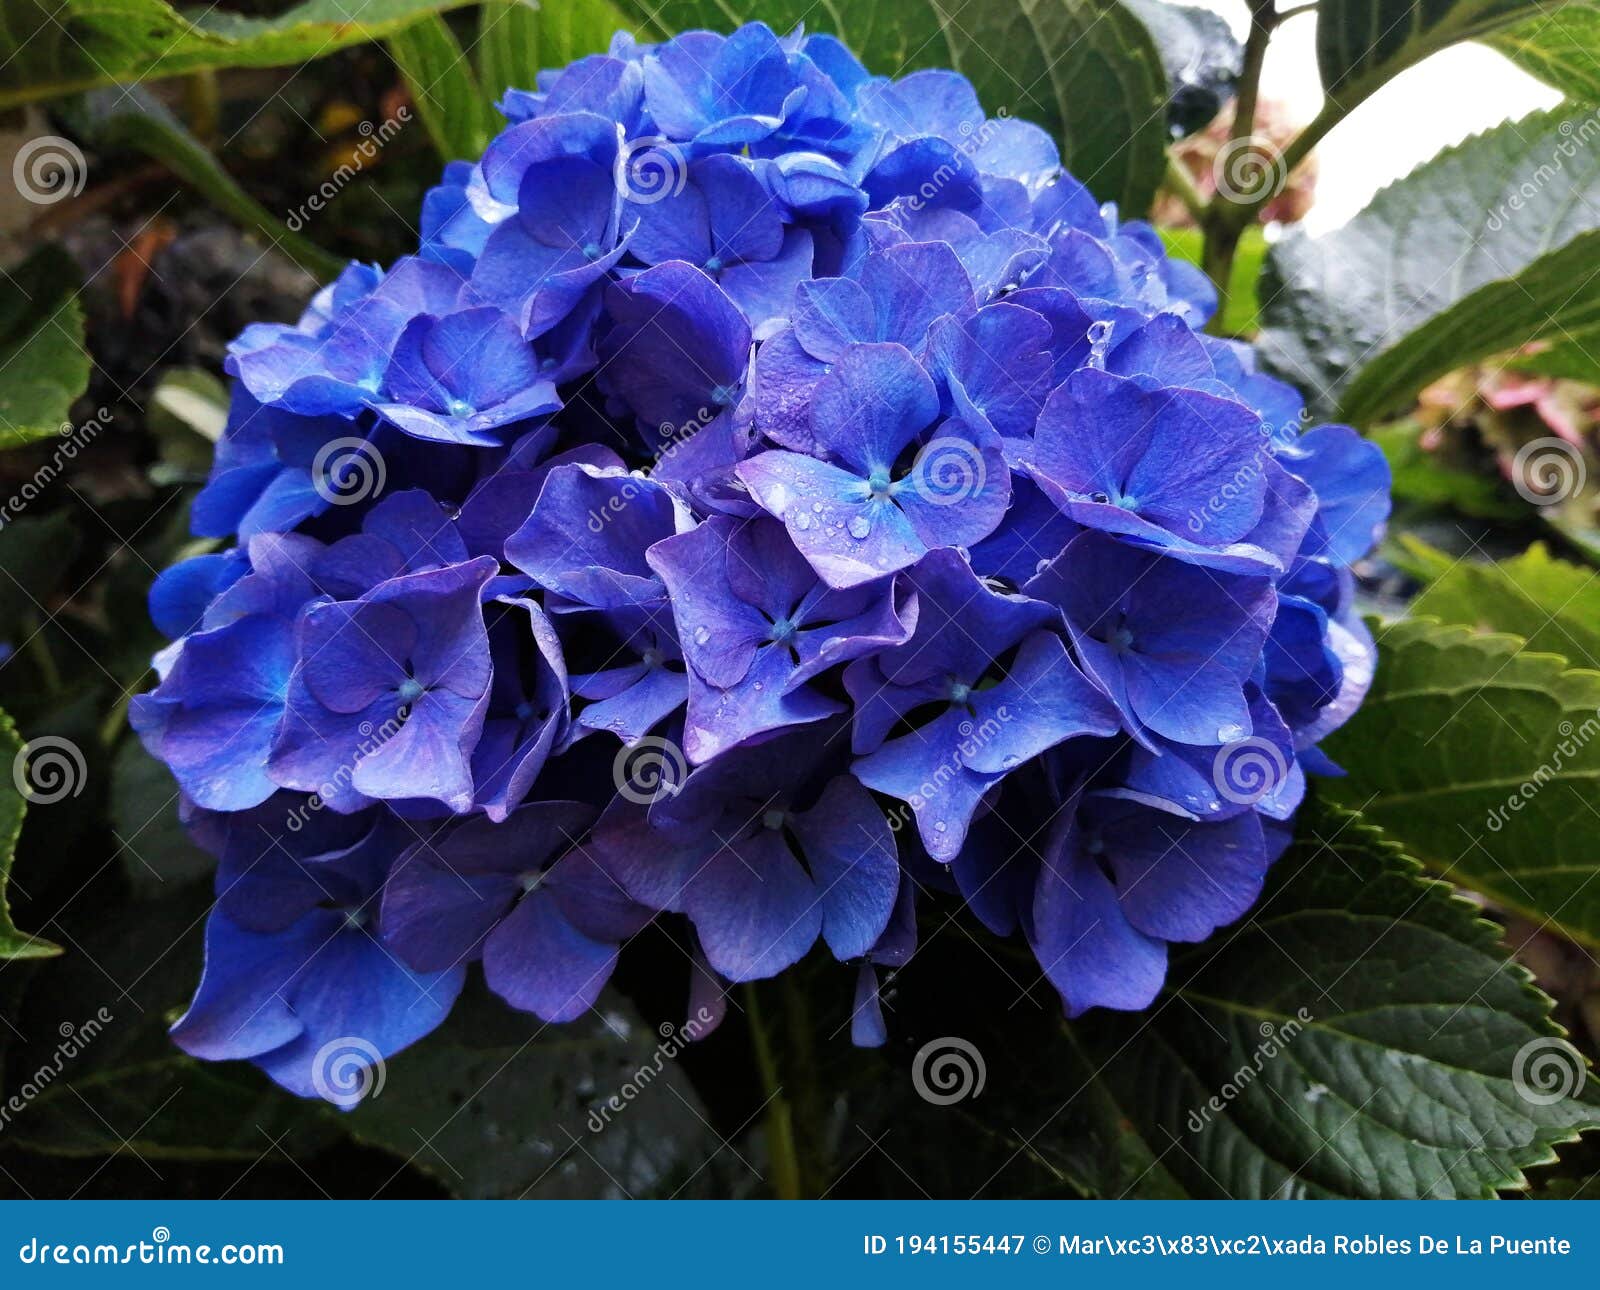 detalle de una hortensia azul despuÃÂ©s de la lluvia